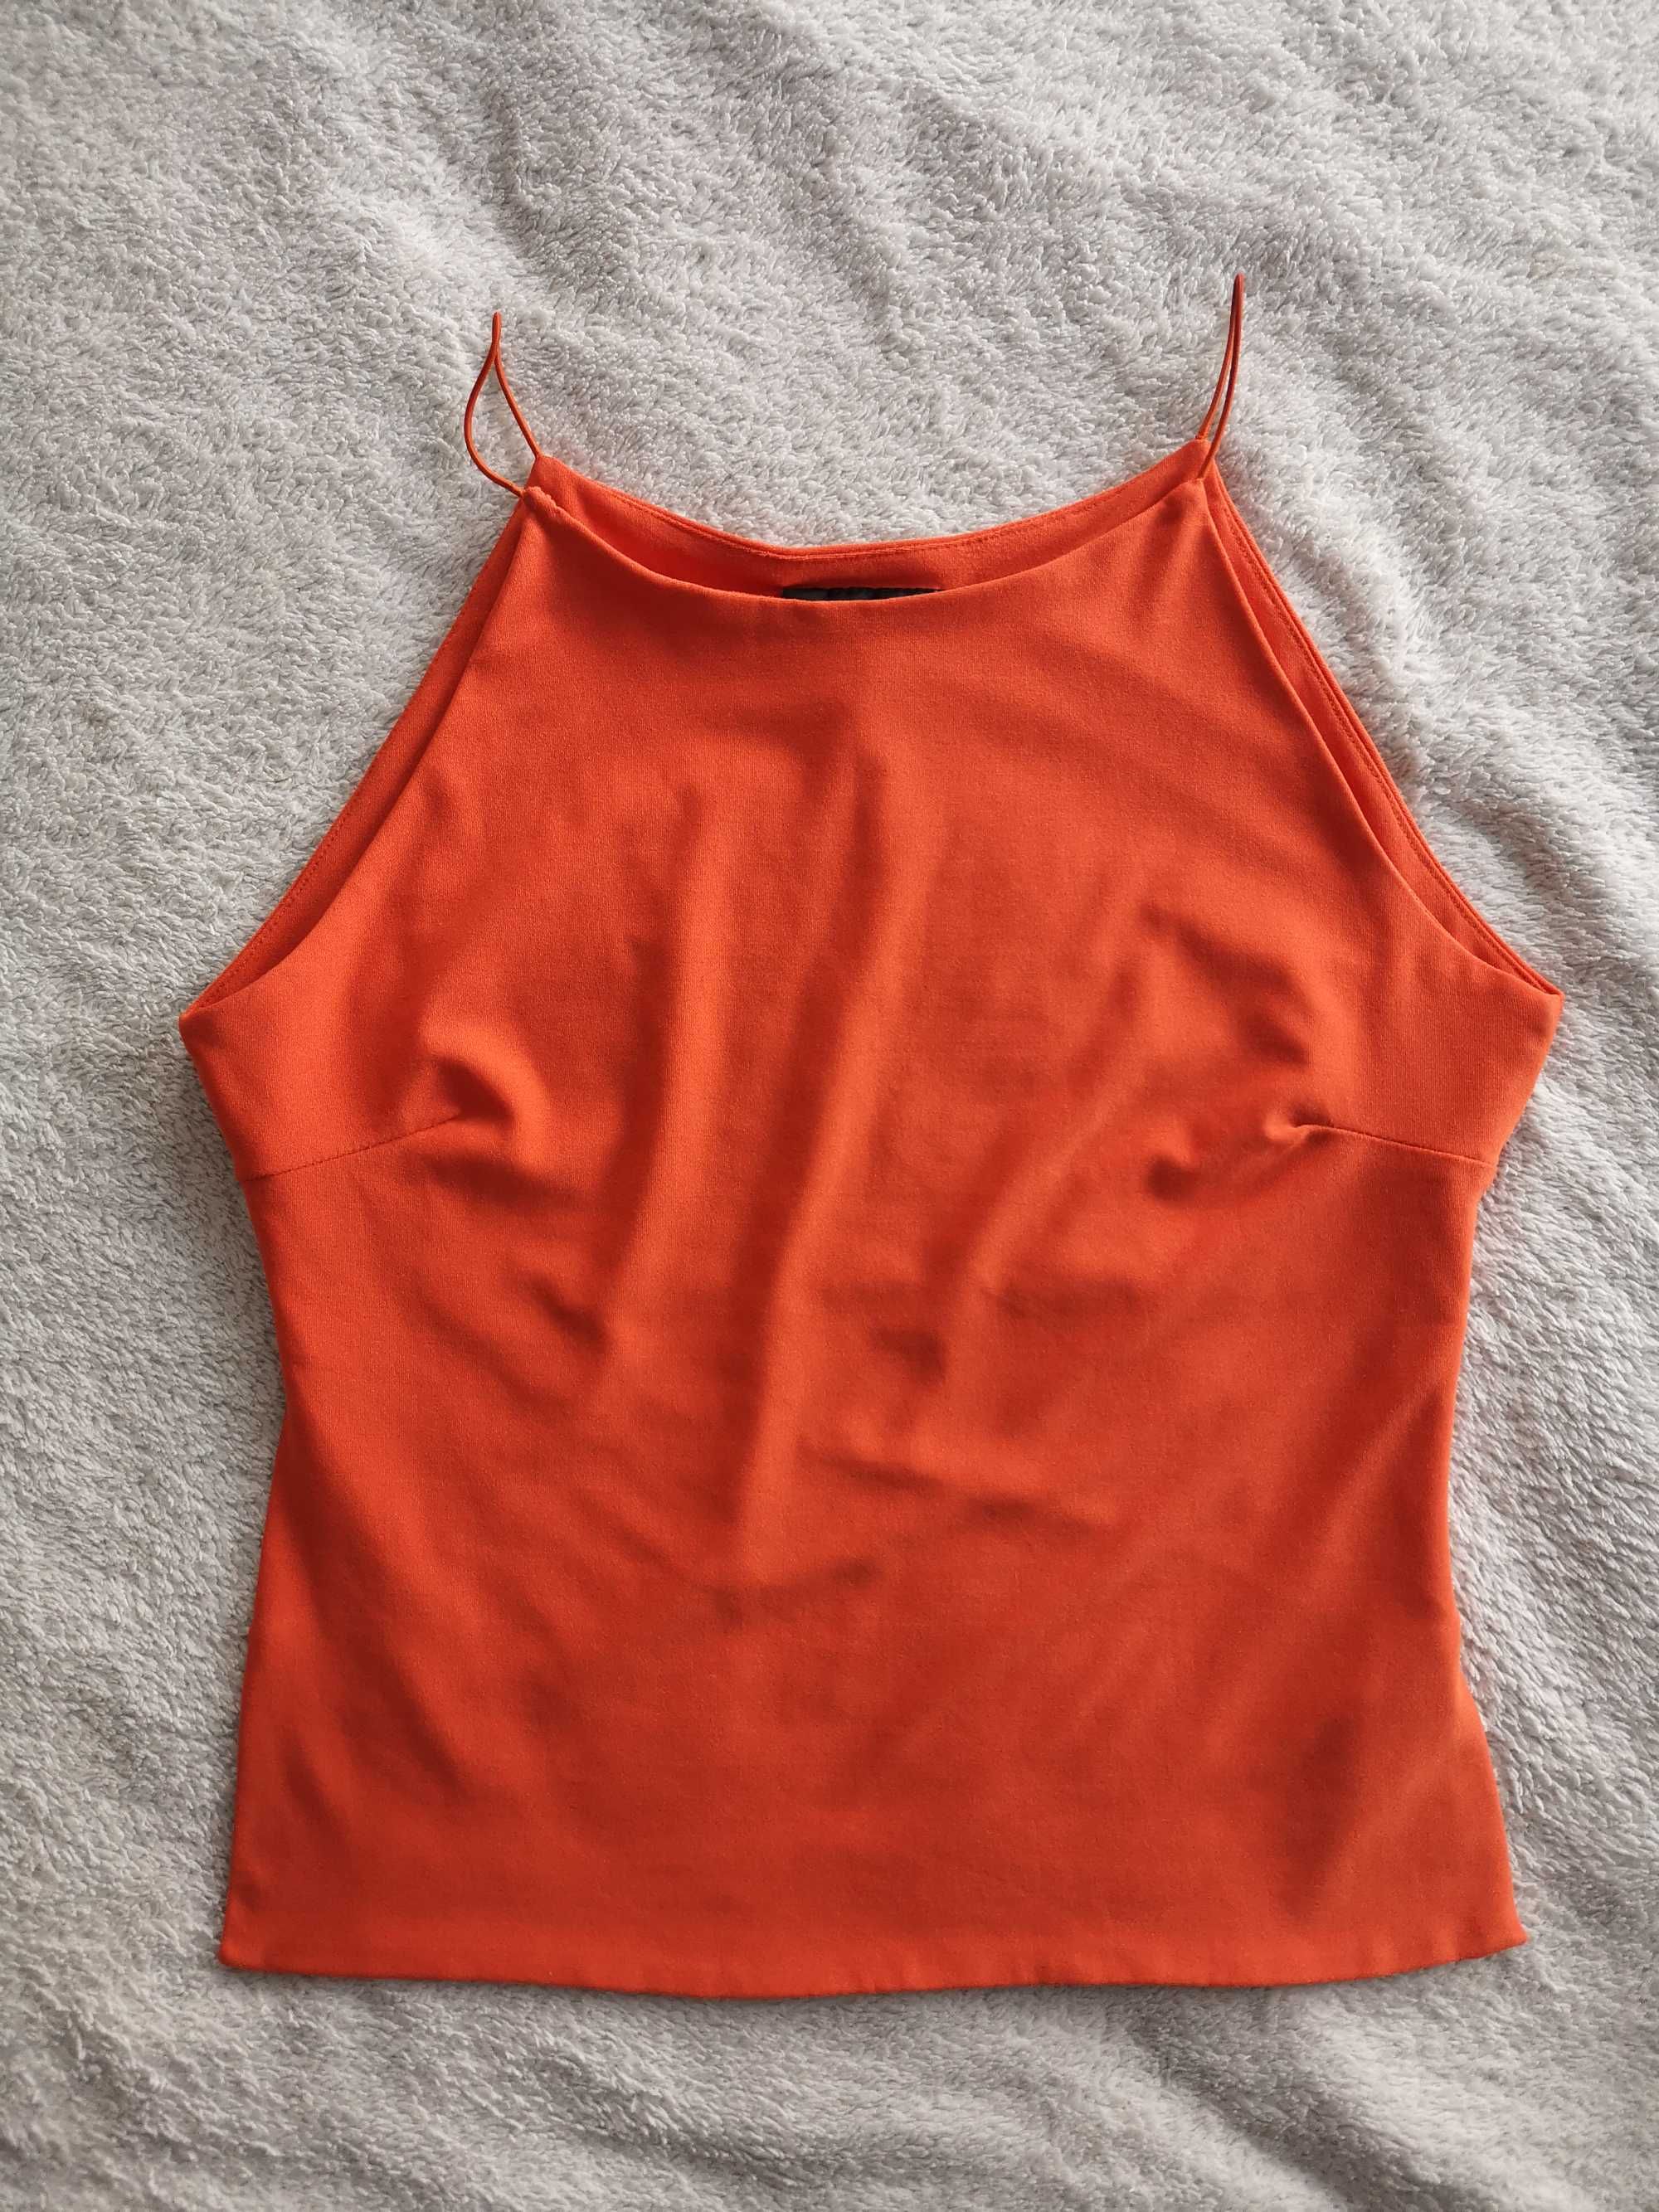 Elegancka czerwona pomarańczowa bluzka top halter Ego 36- 38 - 40